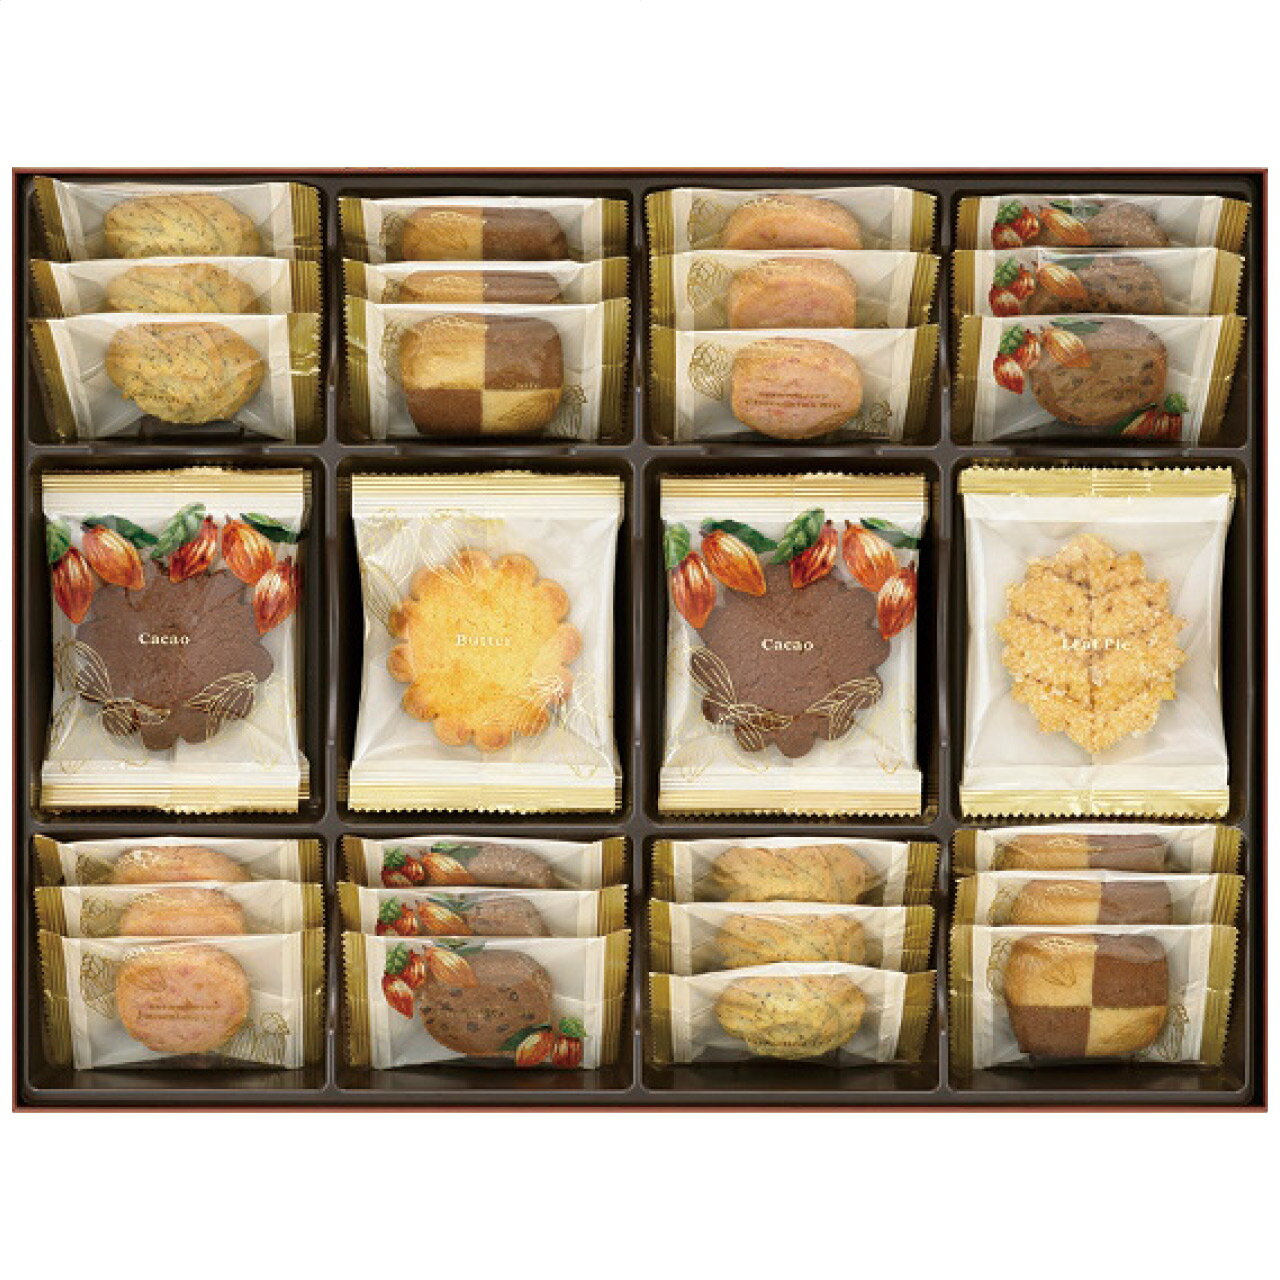 メリーチョコレート チョコレート詰め合わせ クッキーコレクション CC-S メリーチョコレート 日本製 [APD2192-033]| 洋菓子スイーツ・お菓子 洋菓子 洋菓子セット・詰め合わせ